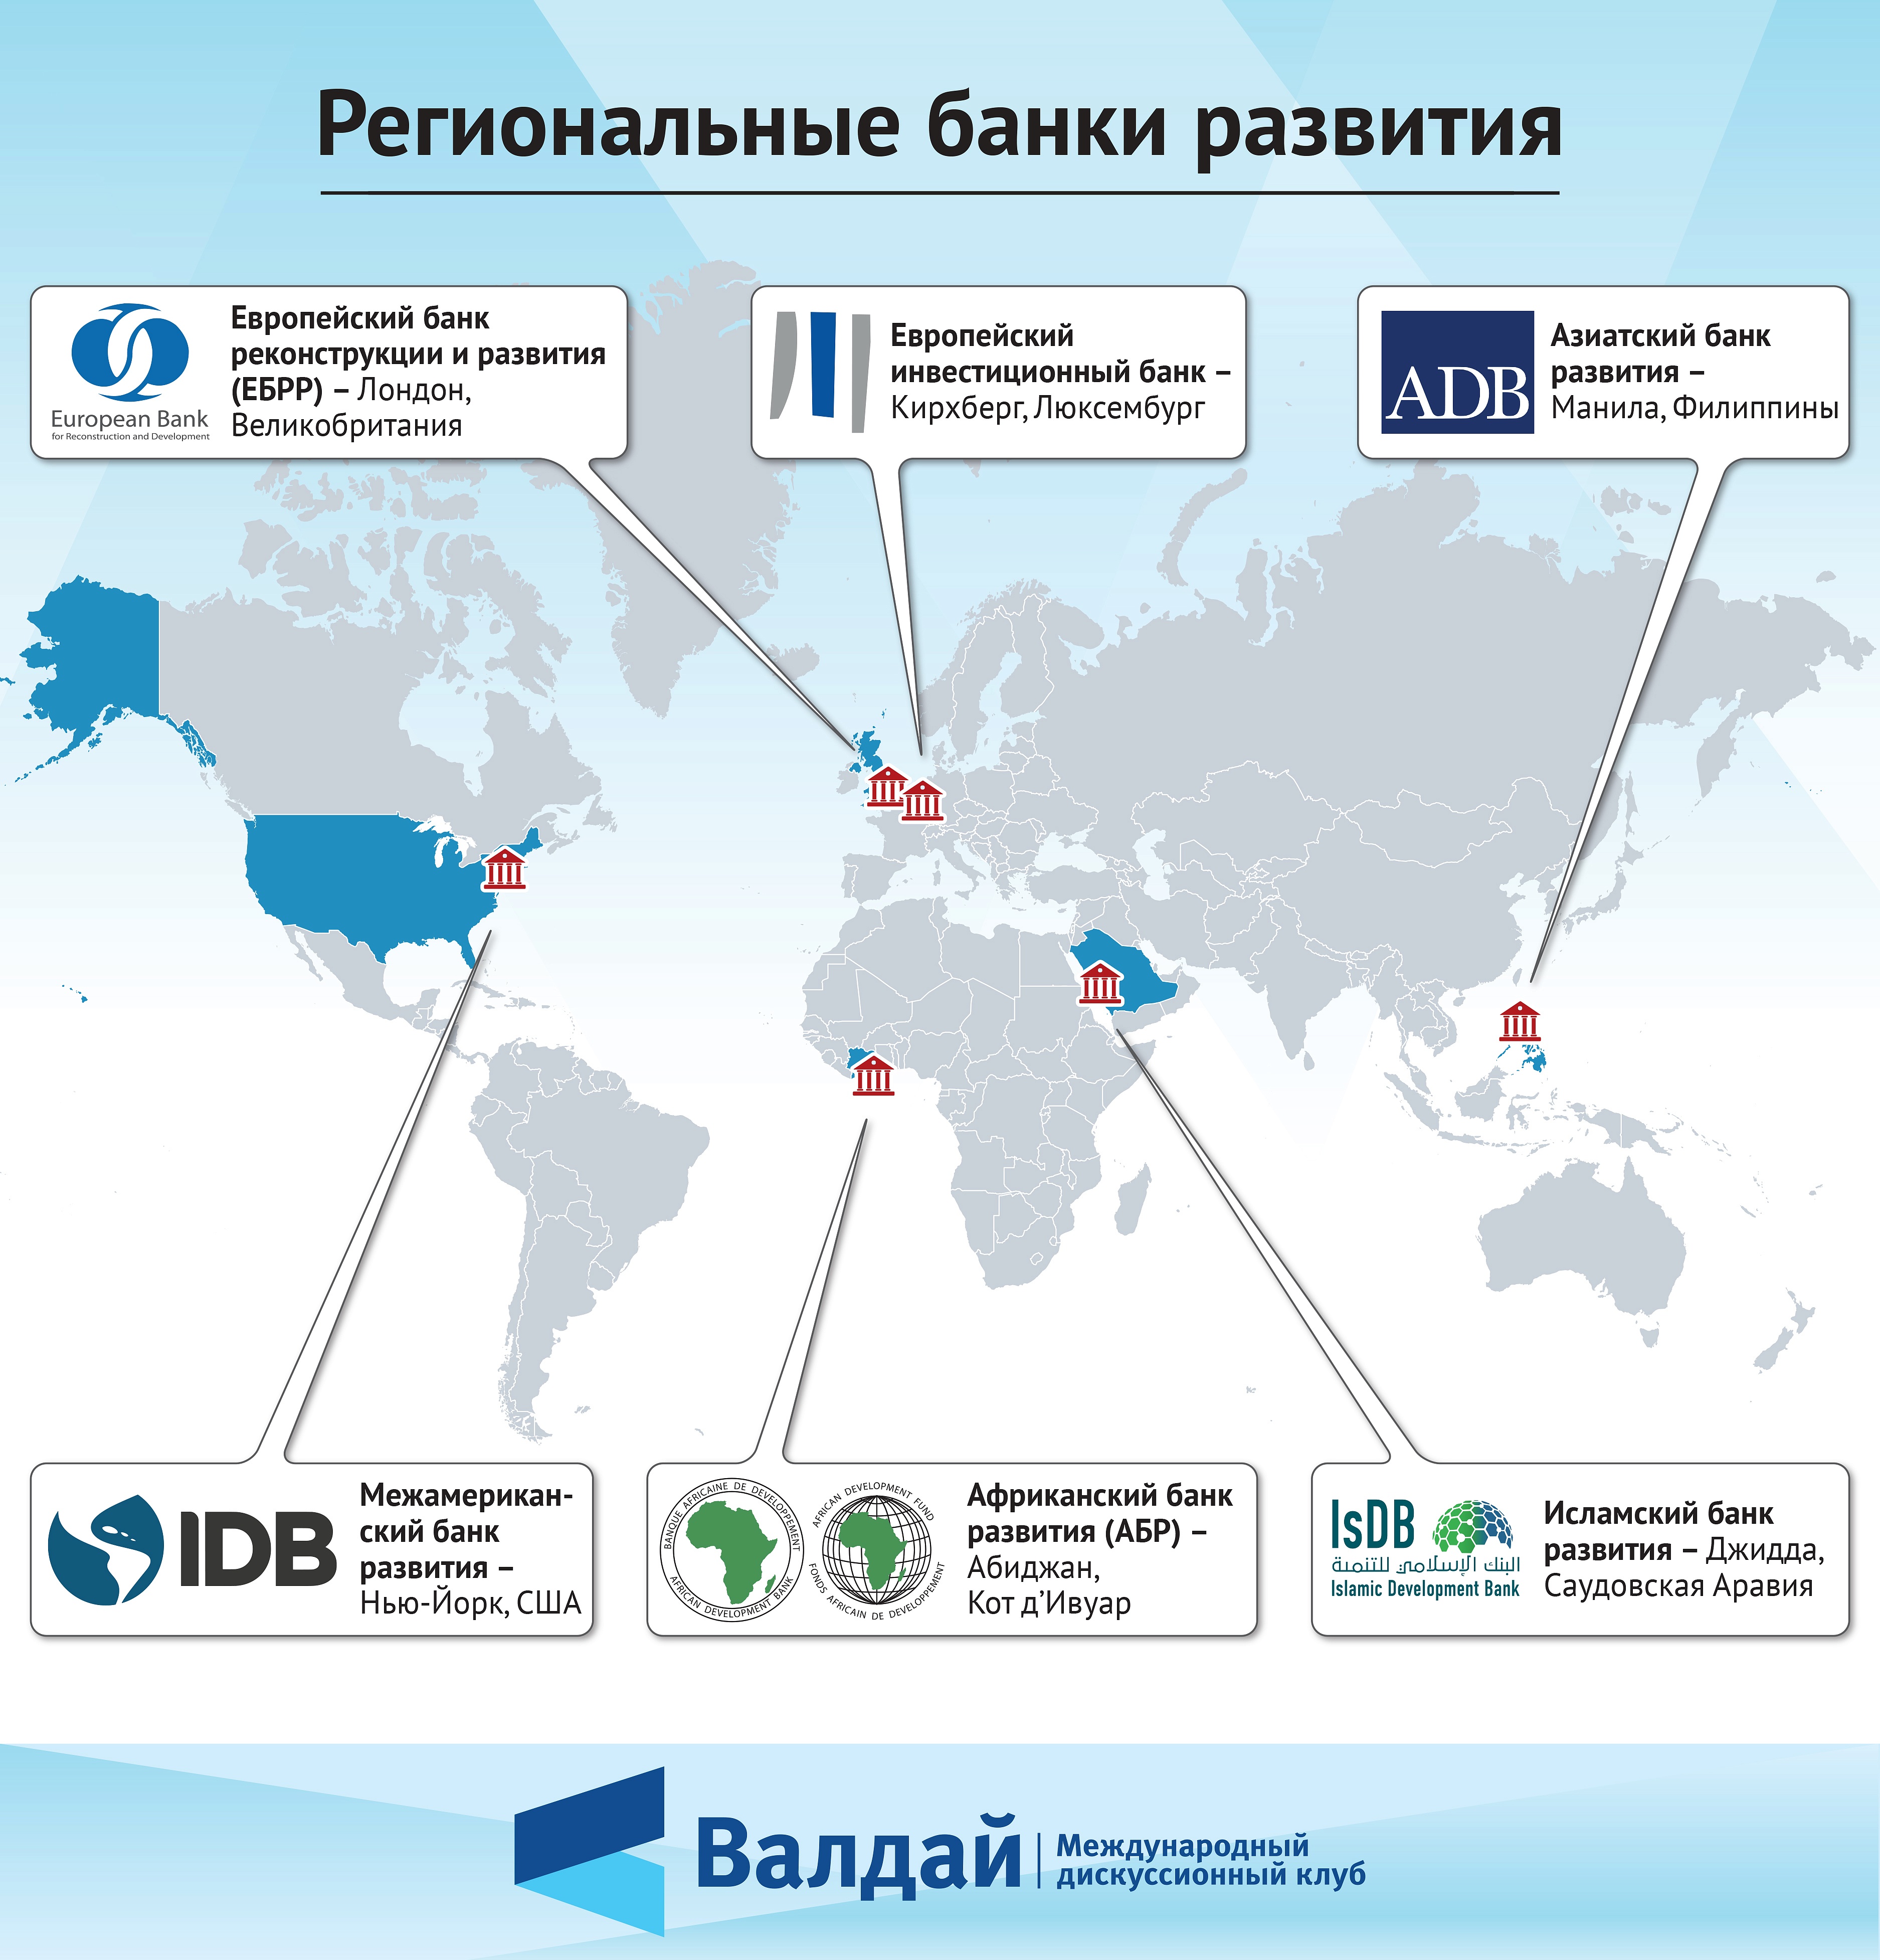 Какие банки какой стране принадлежат. Региональные банки развития. Международные региональные банки развития. Региональный банк развития. Региональные банки развития и Россия.